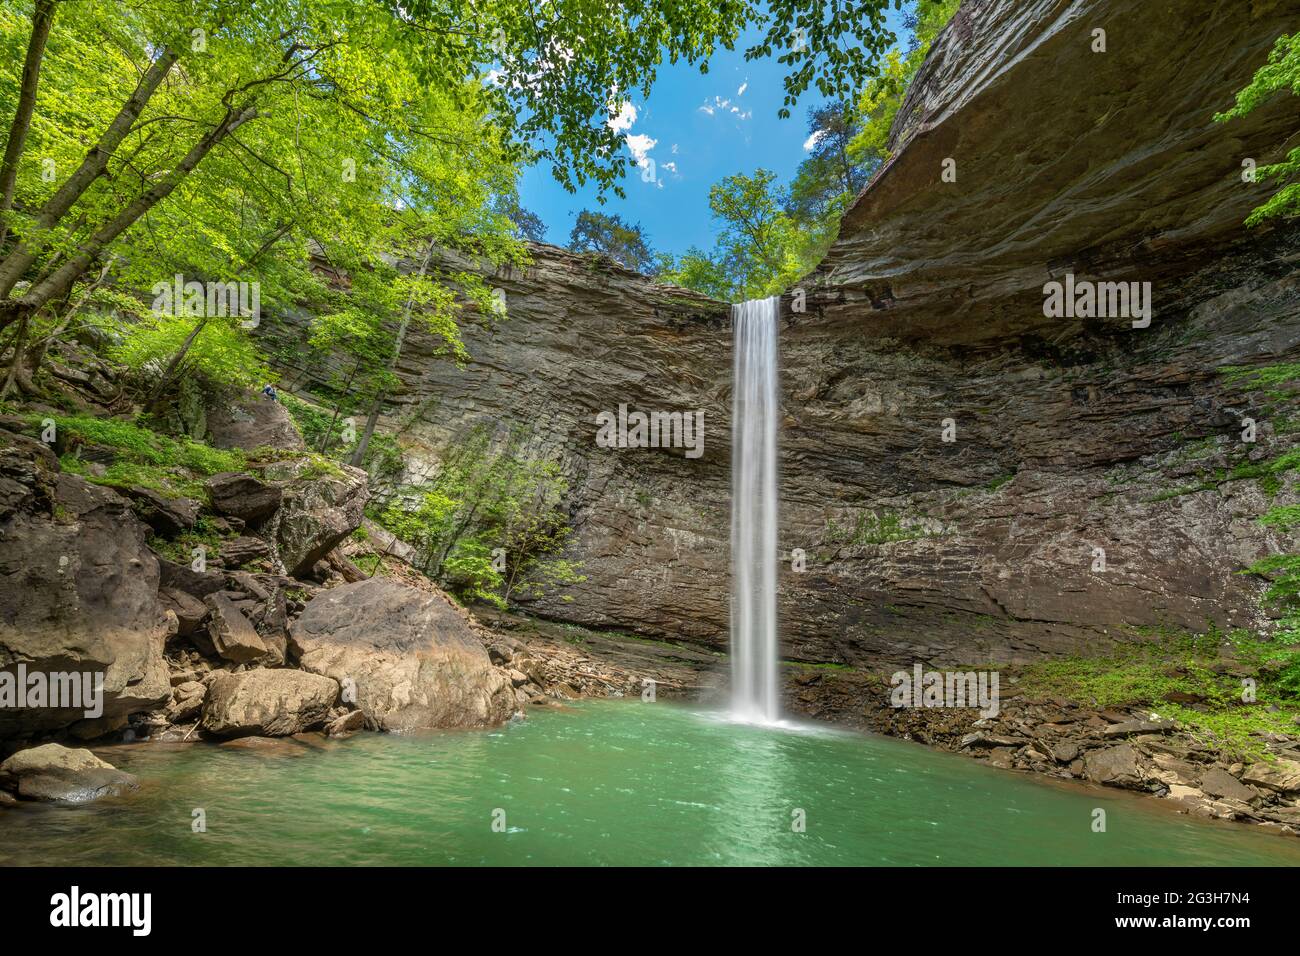 Belles chutes d'ozone dans le comté de Cumberland Tennessee est un magnifique trou de baignade avec une cascade fraîche qui alimente la piscine. Banque D'Images